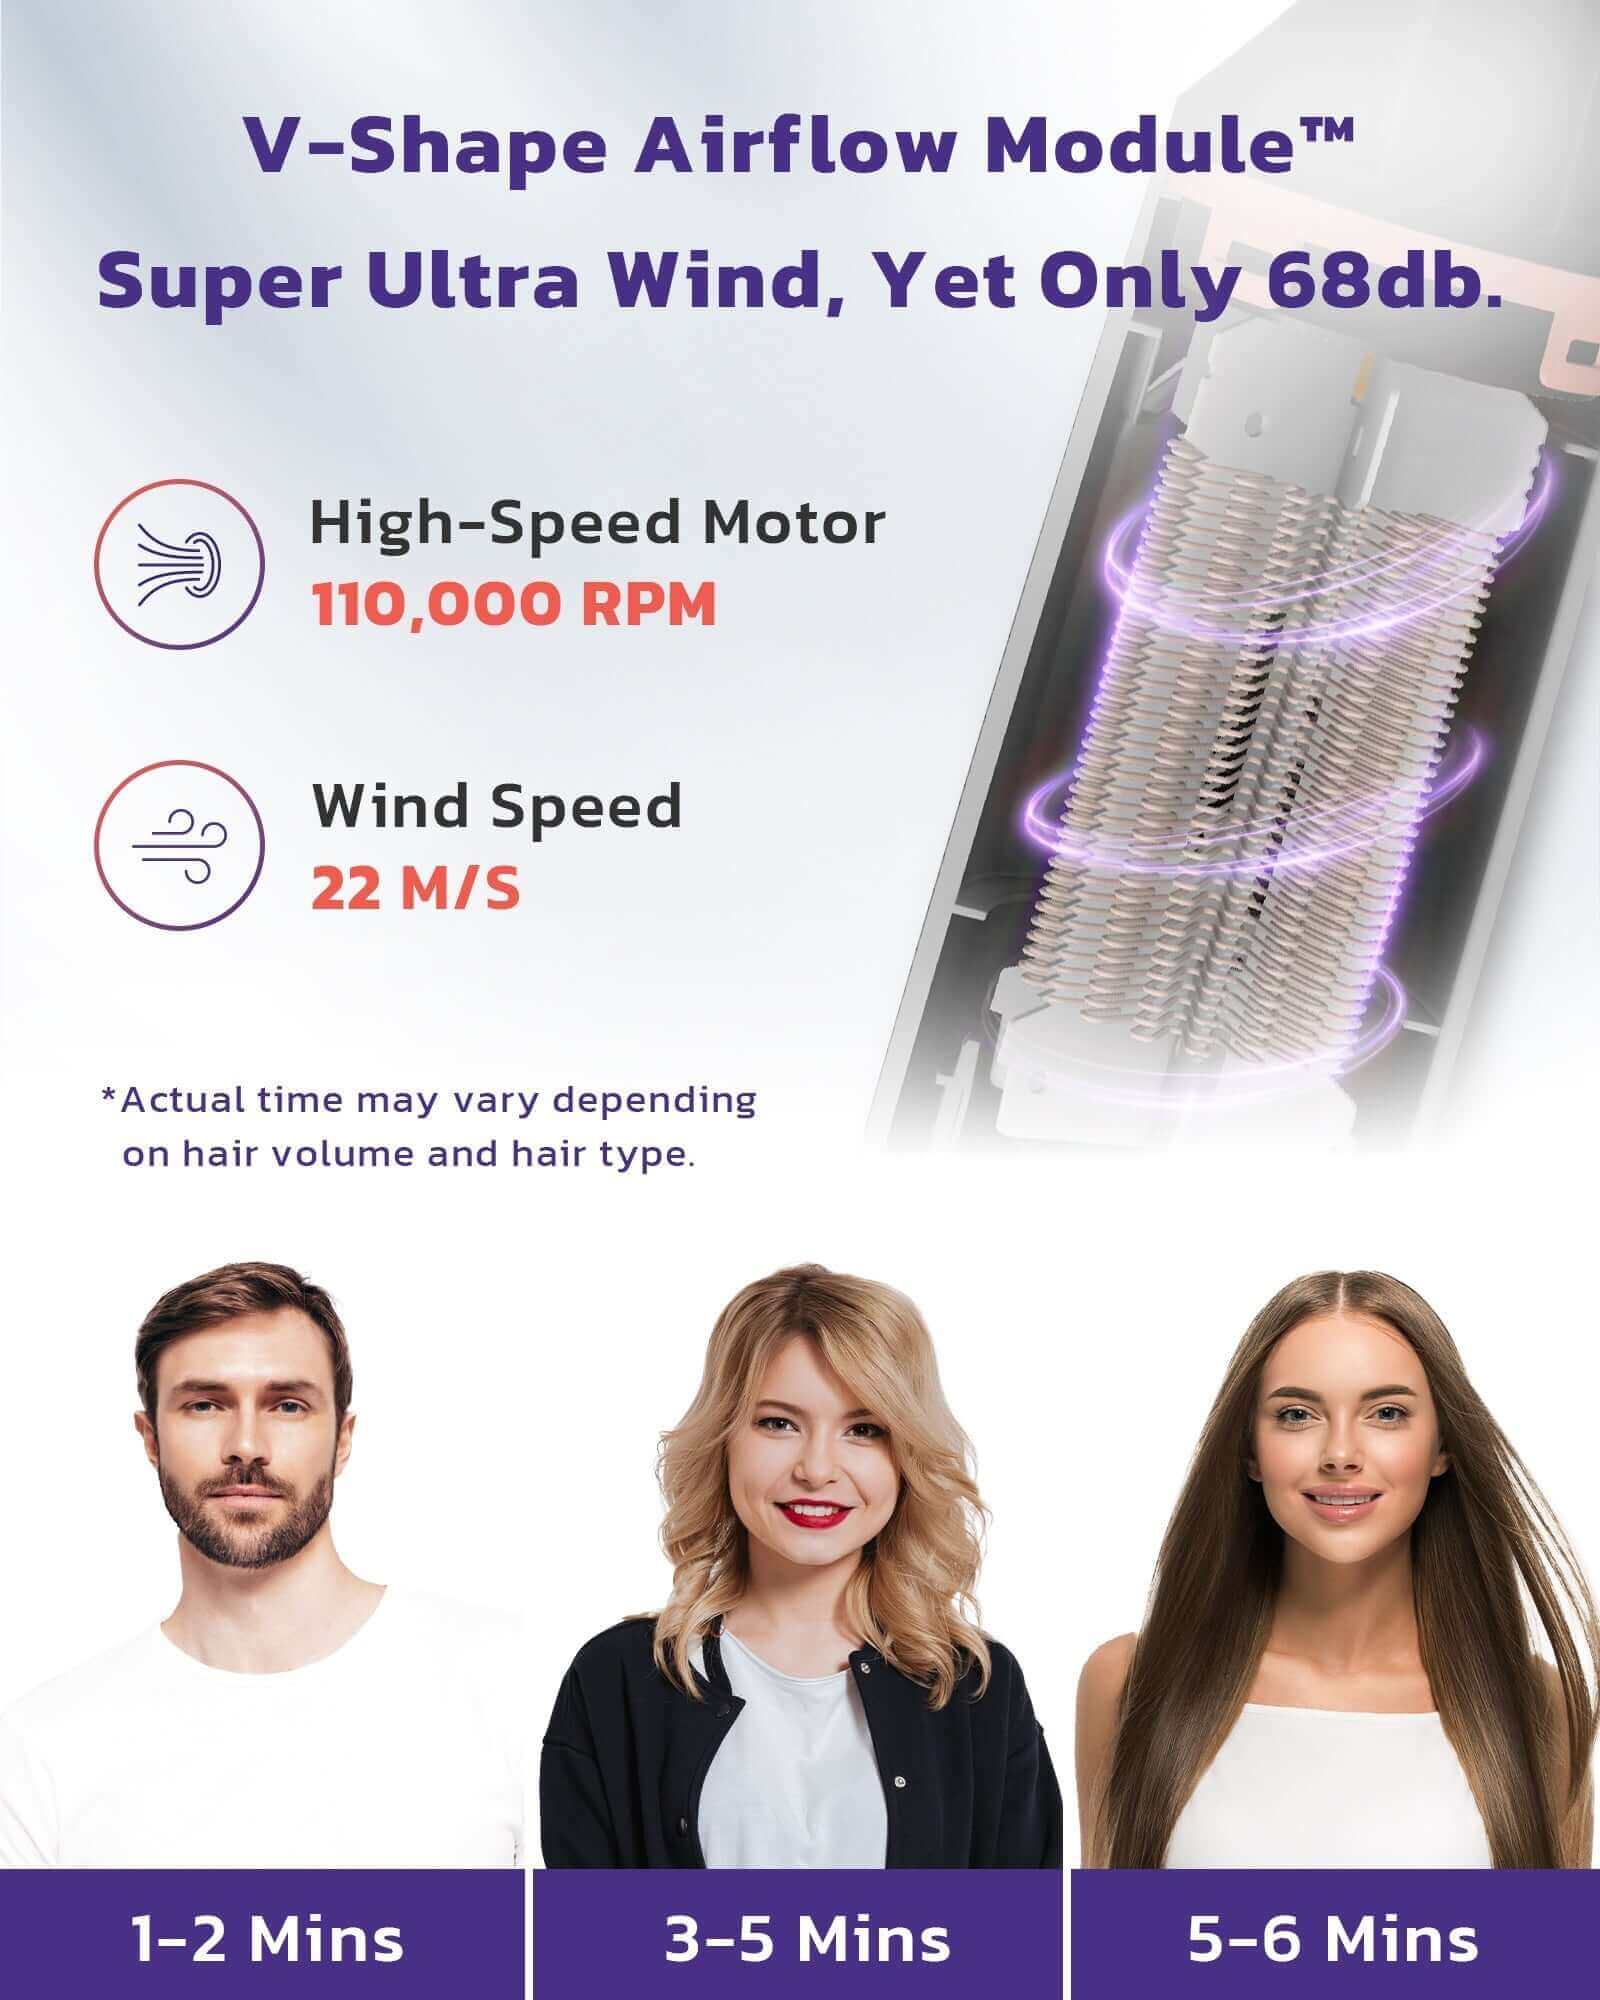 VENTRIS BlitzFlow ™   High Speed Hair Dryer